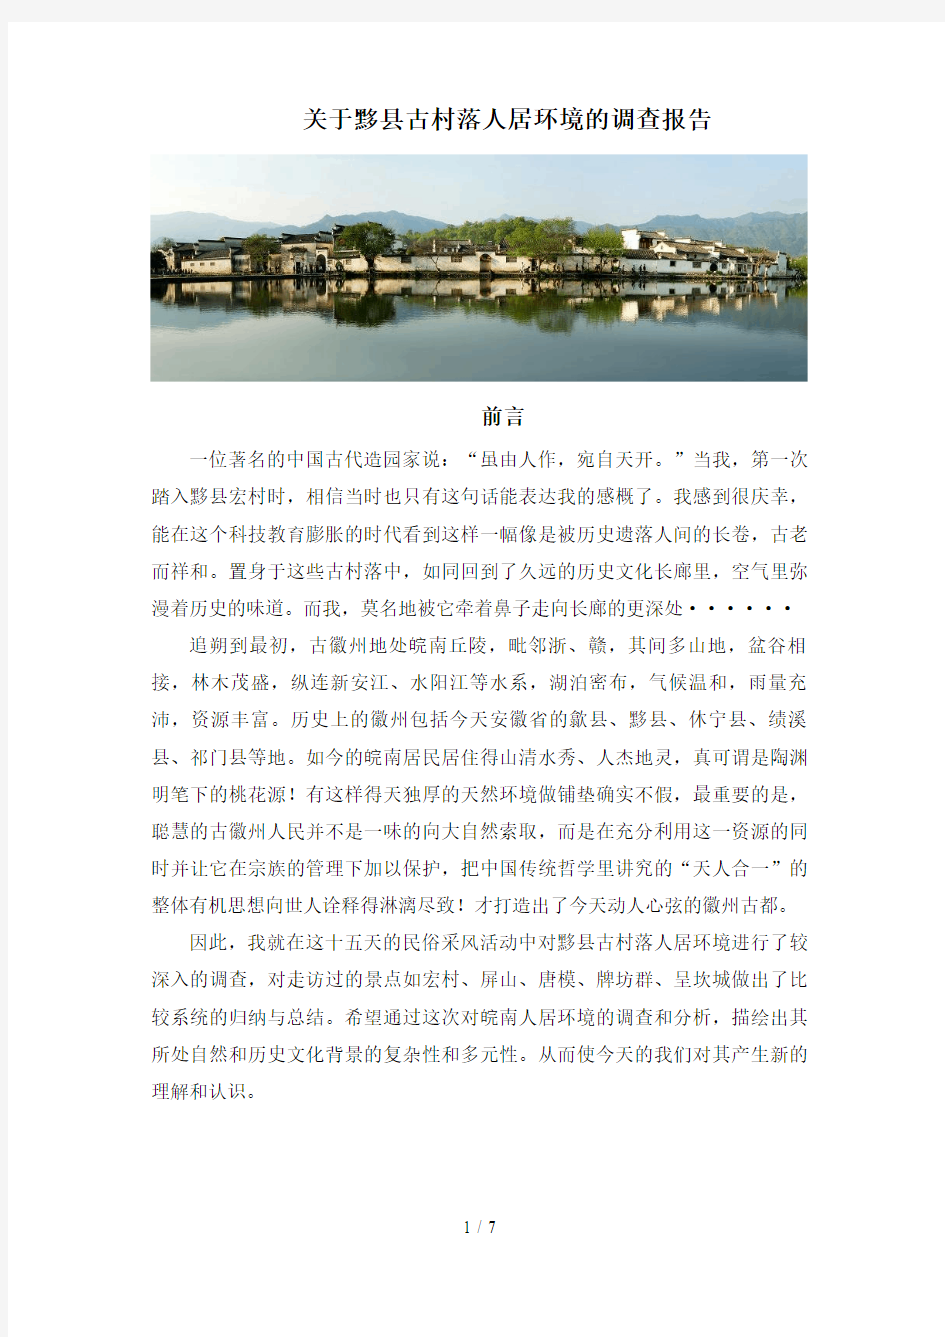 关于黟县古村落人居环境的调查报告